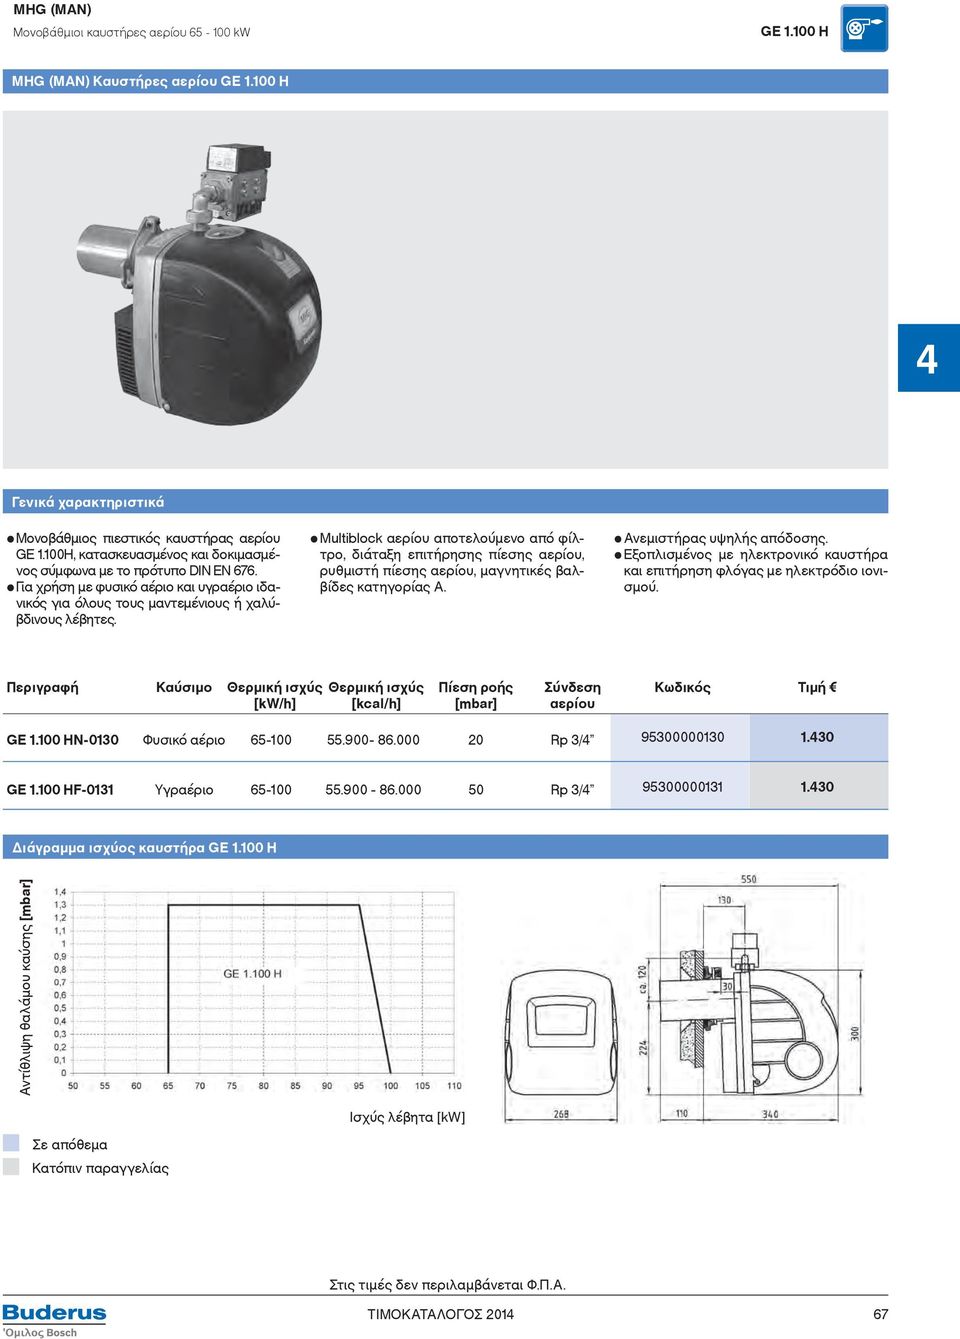 Μultiblock αερίου αποτελούμενο από φίλτρο, διάταξη επιτήρησης πίεσης αερίου, ρυθμιστή πίεσης αερίου, μαγνητικές βαλβίδες κατηγορίας Α. Ανεμιστήρας υψηλής απόδοσης.